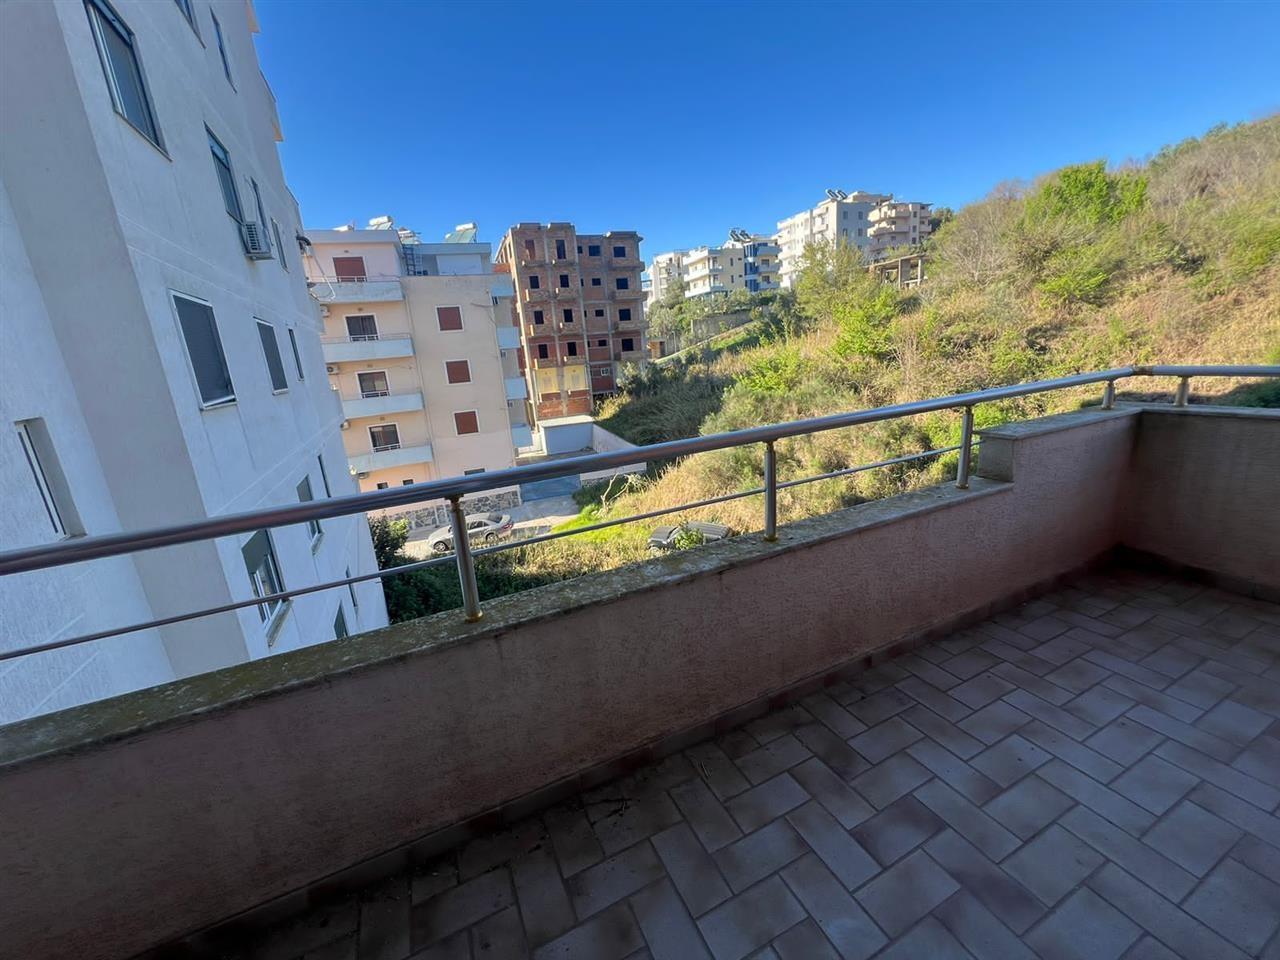 Foto e Apartment në shitje Shkembi i Kavajes, perballe Hotel "Benilva", Durrës